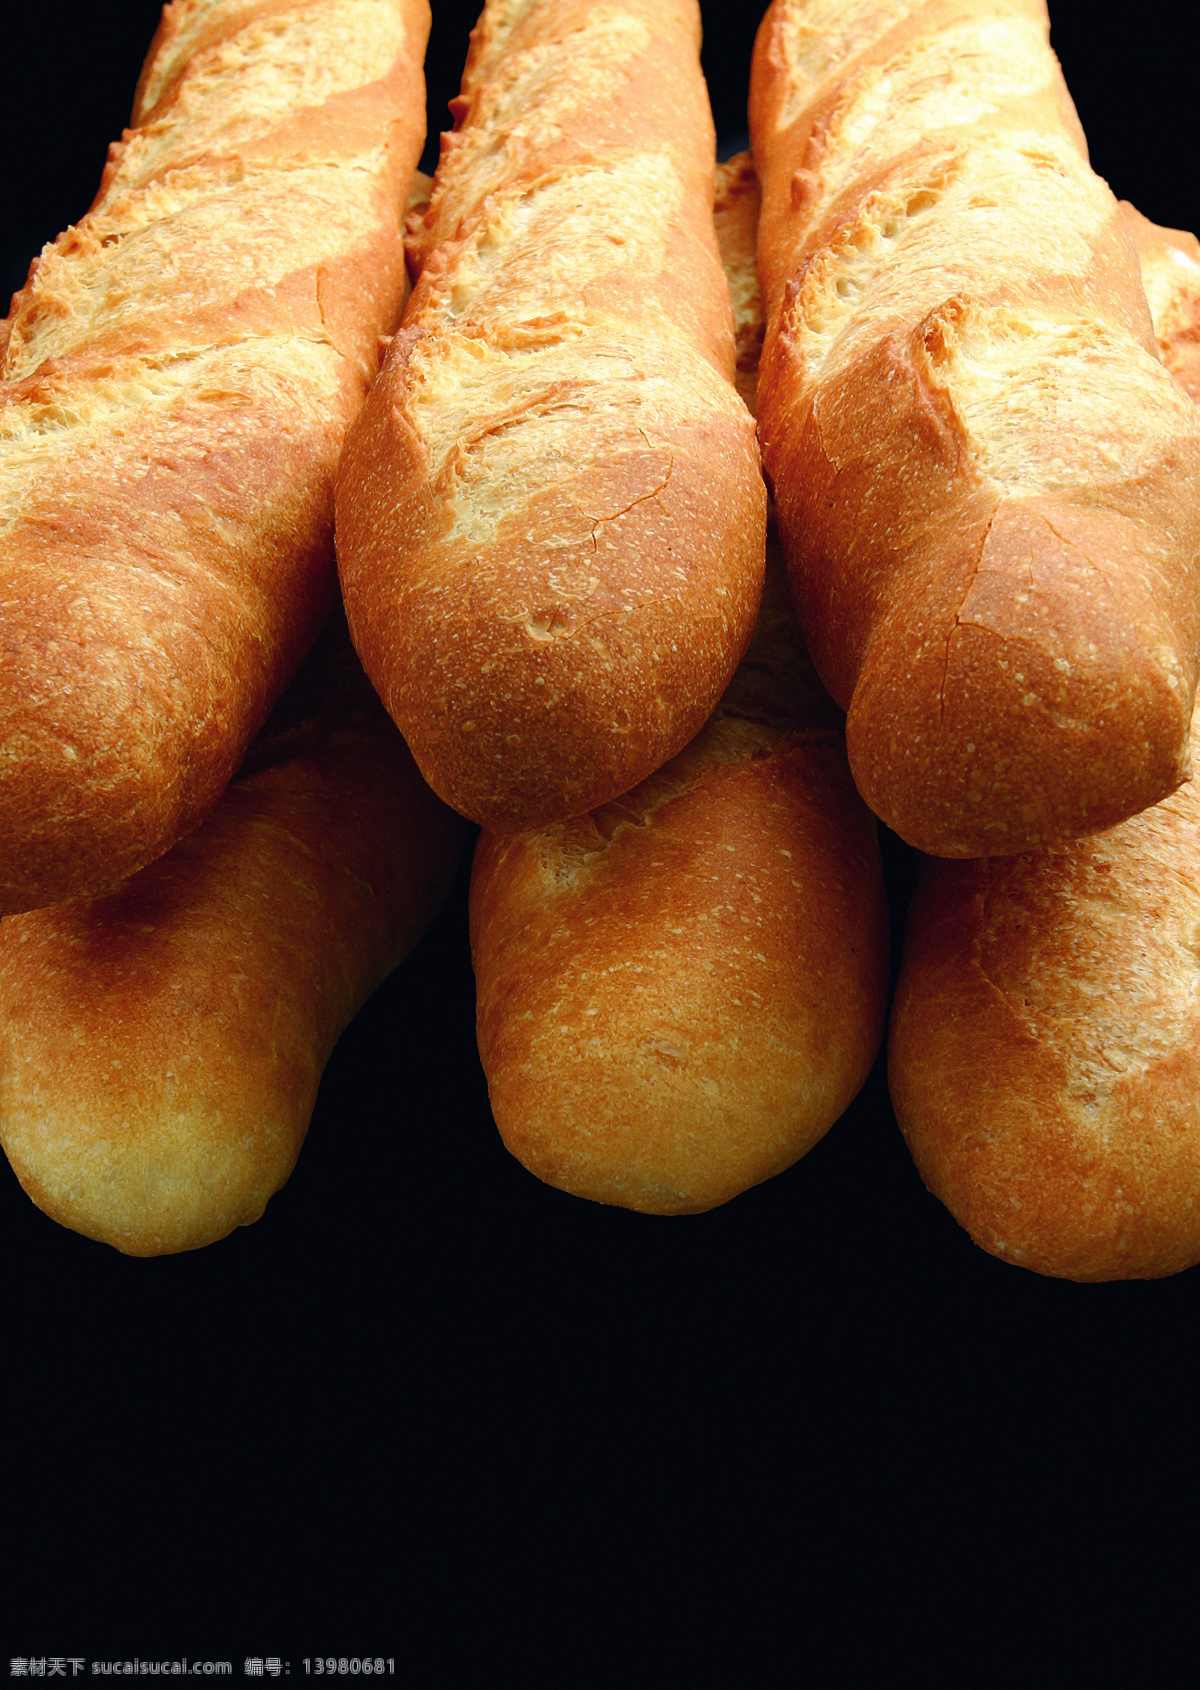 美味面包 面包 糕点 西点 美食 美味 营养 甜点面包主题 传统美食 餐饮美食